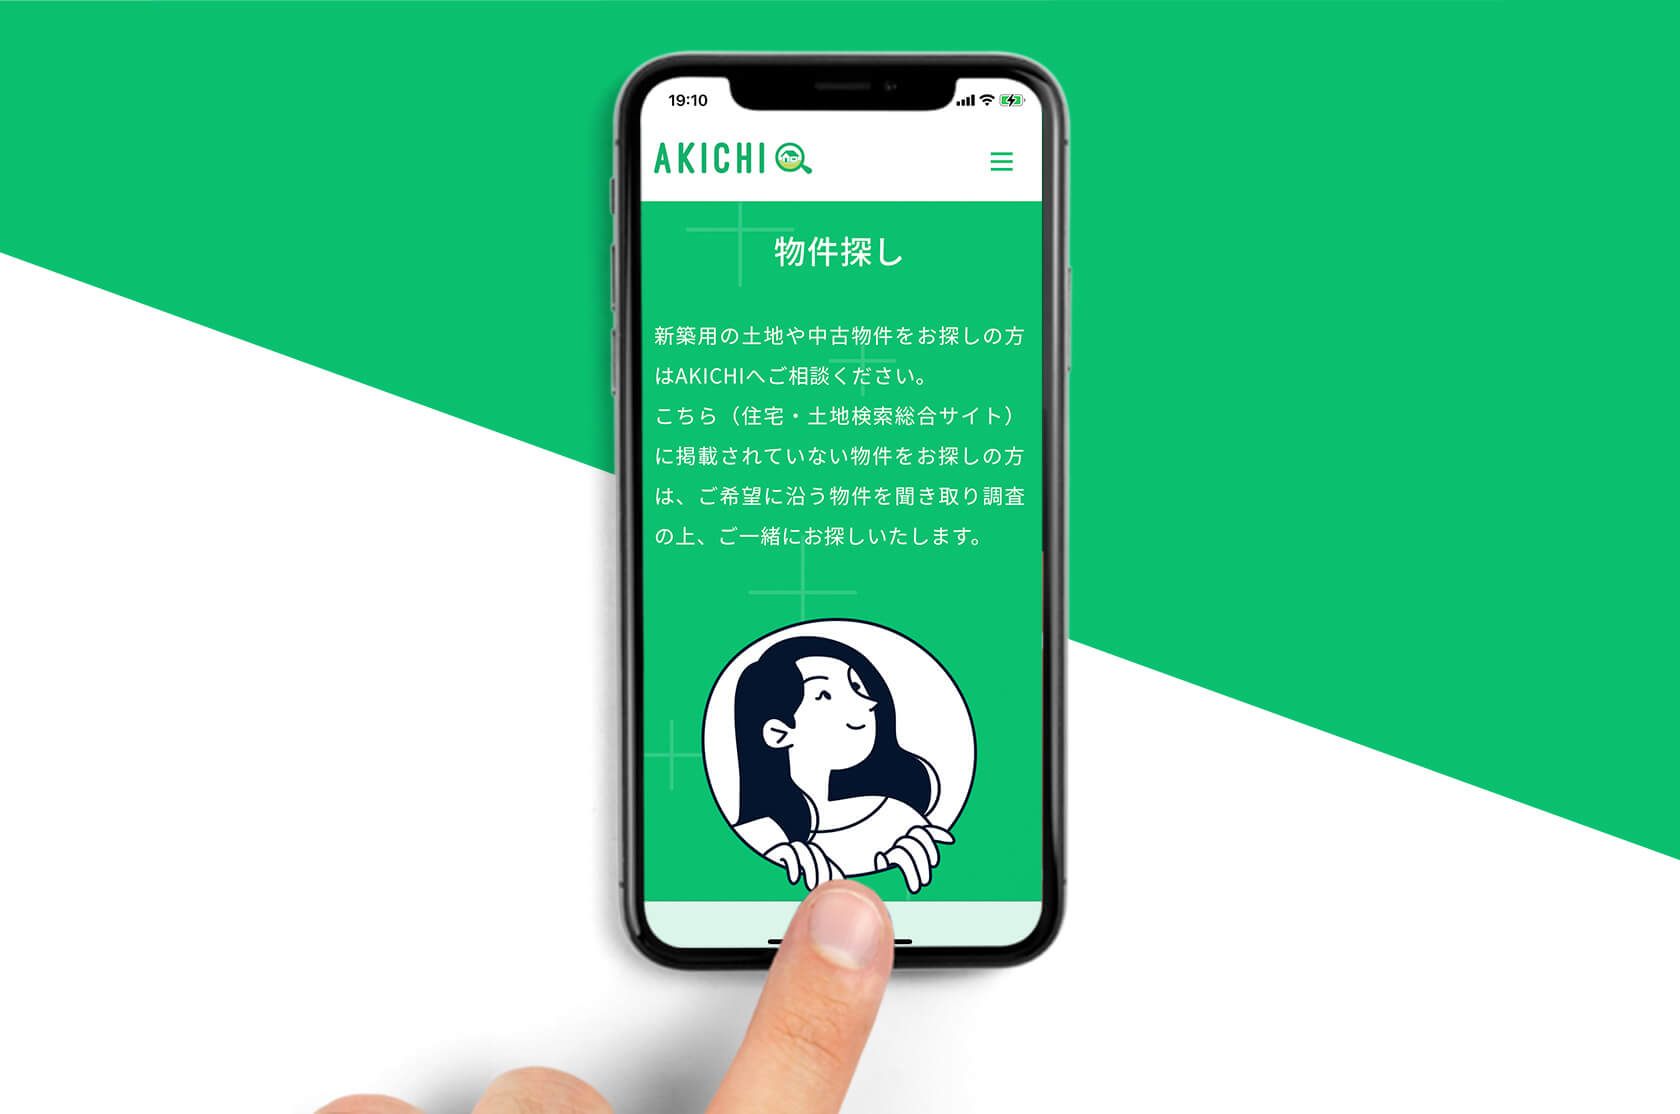 株式会社 AKICHI / Webサイト・シンボルマーク・ロゴ・看板・名刺